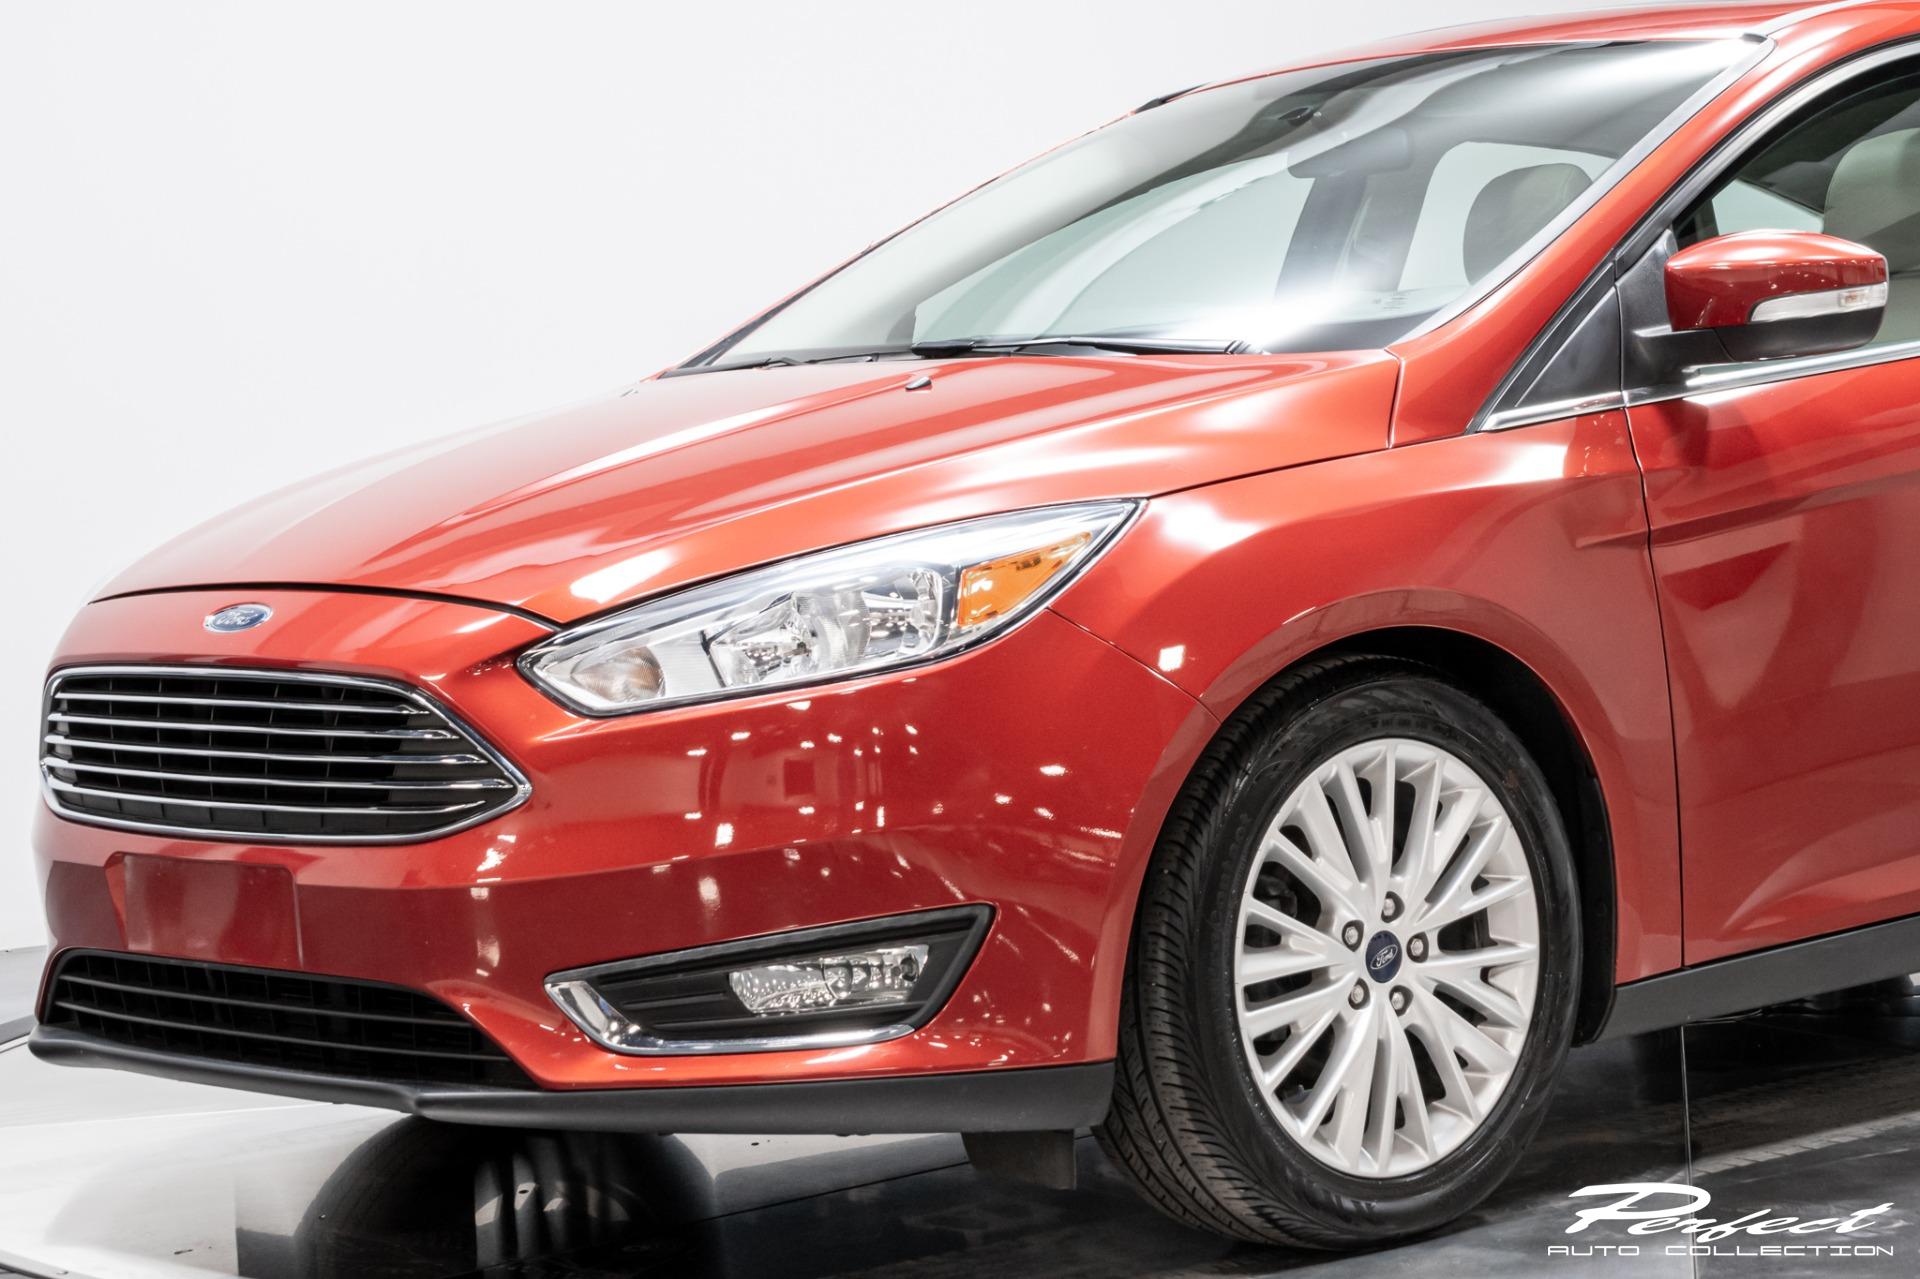 Used 2018 Ford Focus Titanium For Sale ($9,973) | Perfect Auto ...